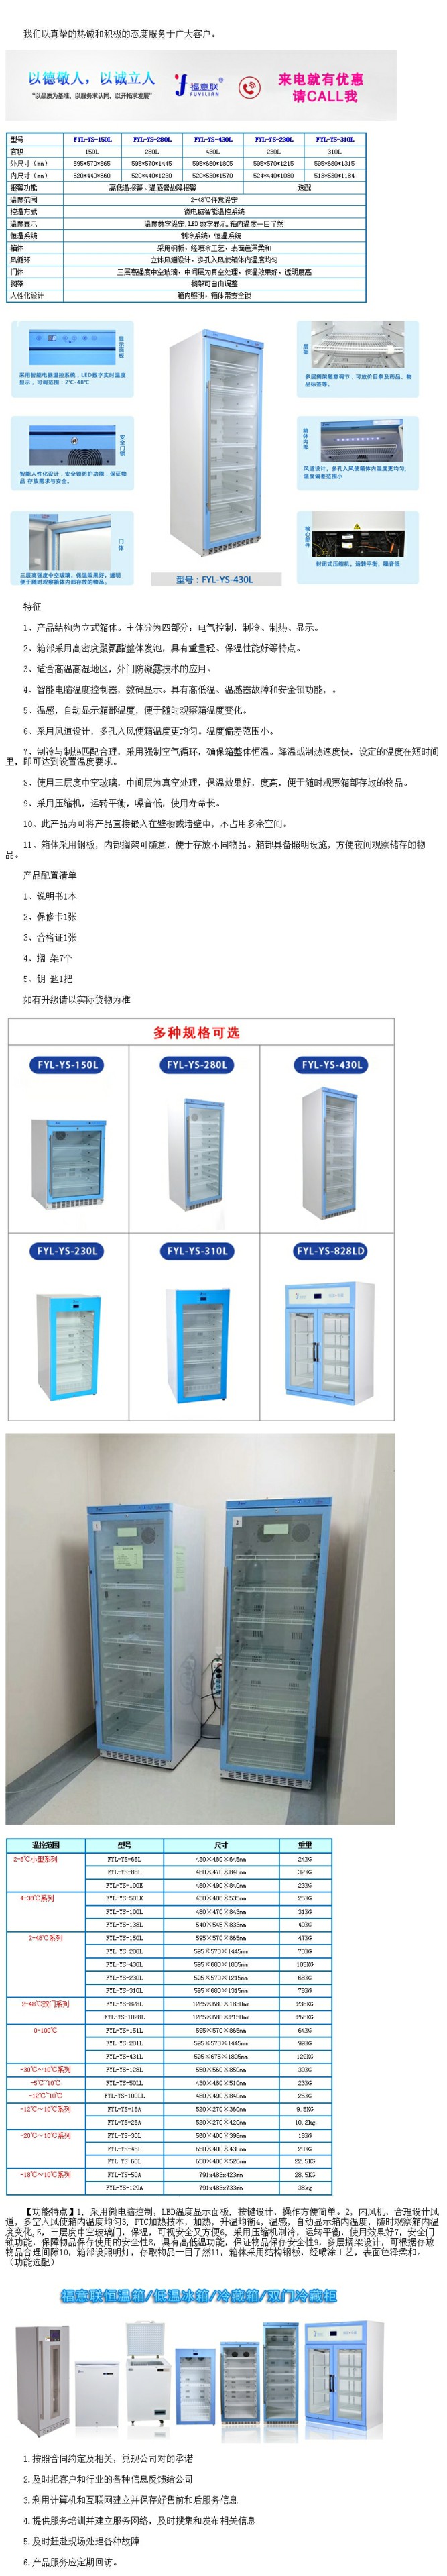 15-30℃药品保存箱_型号FYL-YS-138L恒温冰箱技术要求